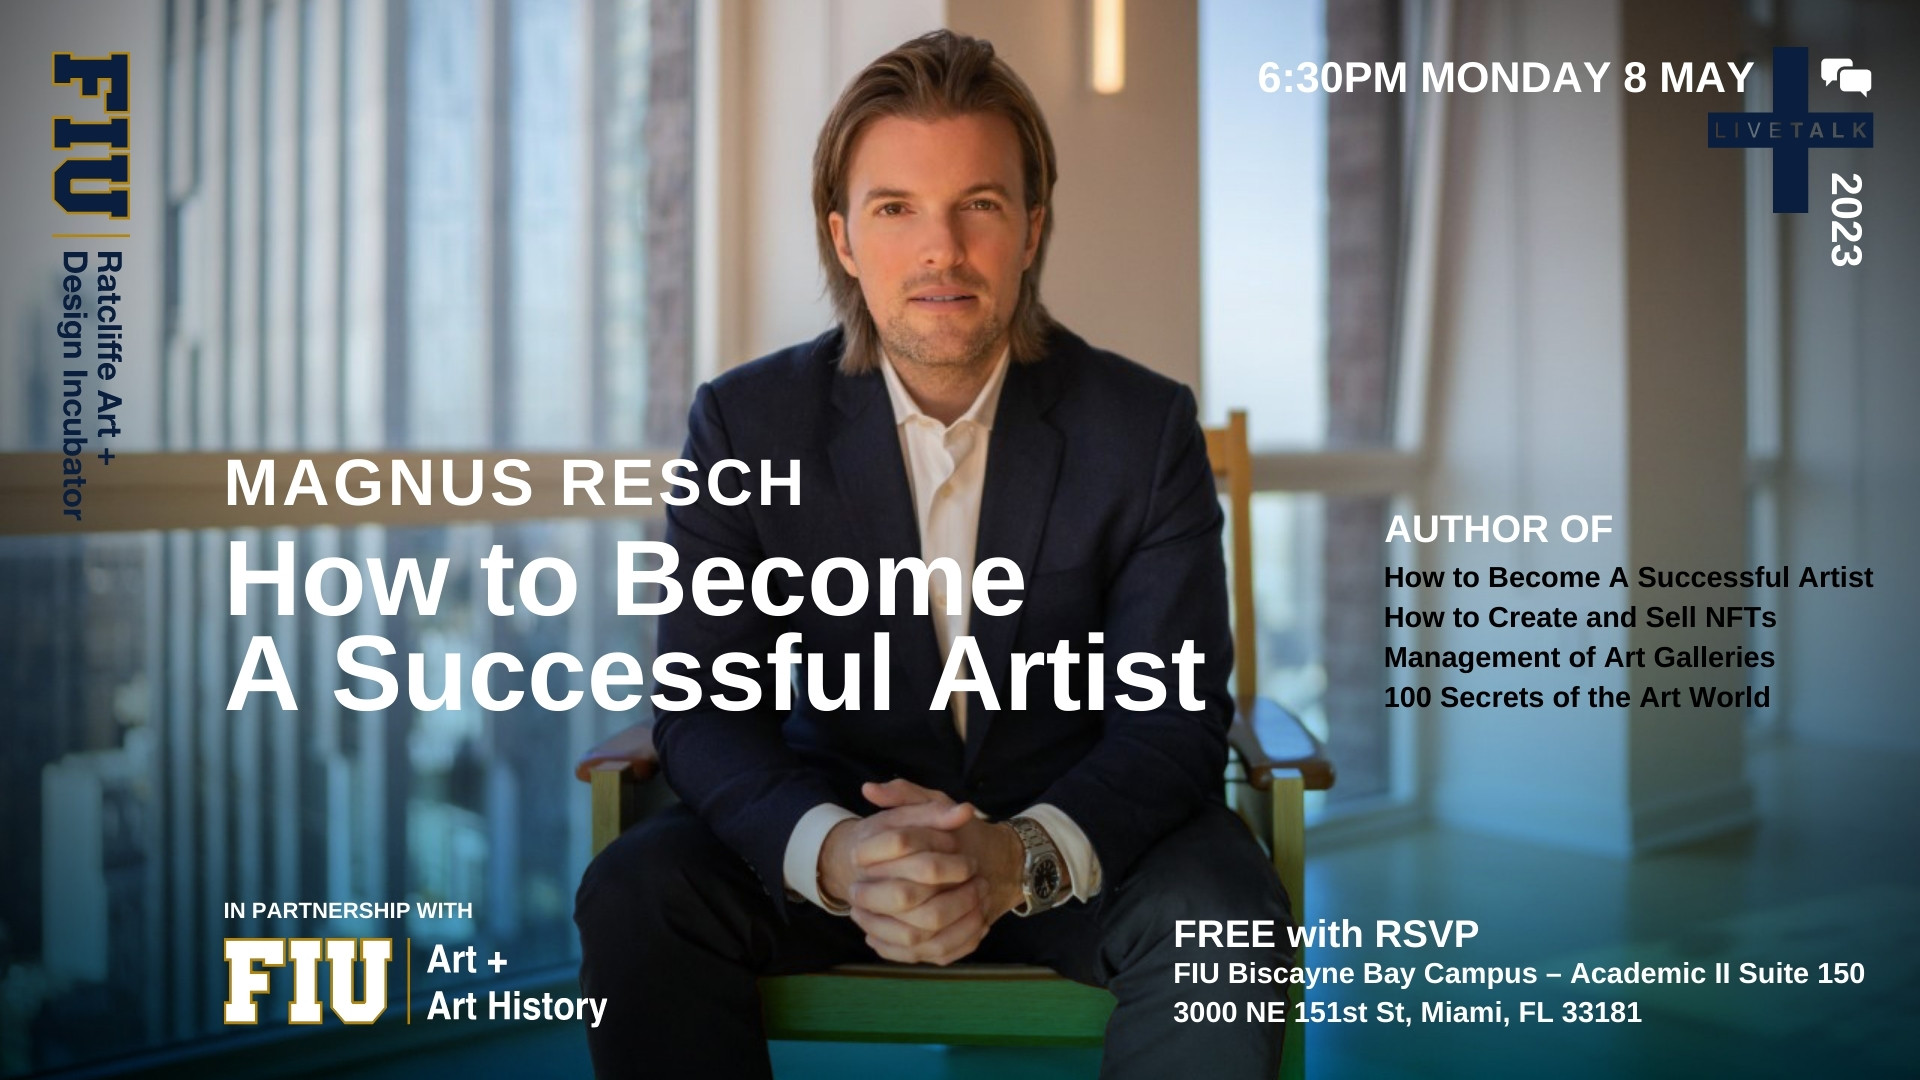 LiveTalk: Magnus Resch: How to Be a Successful Artist